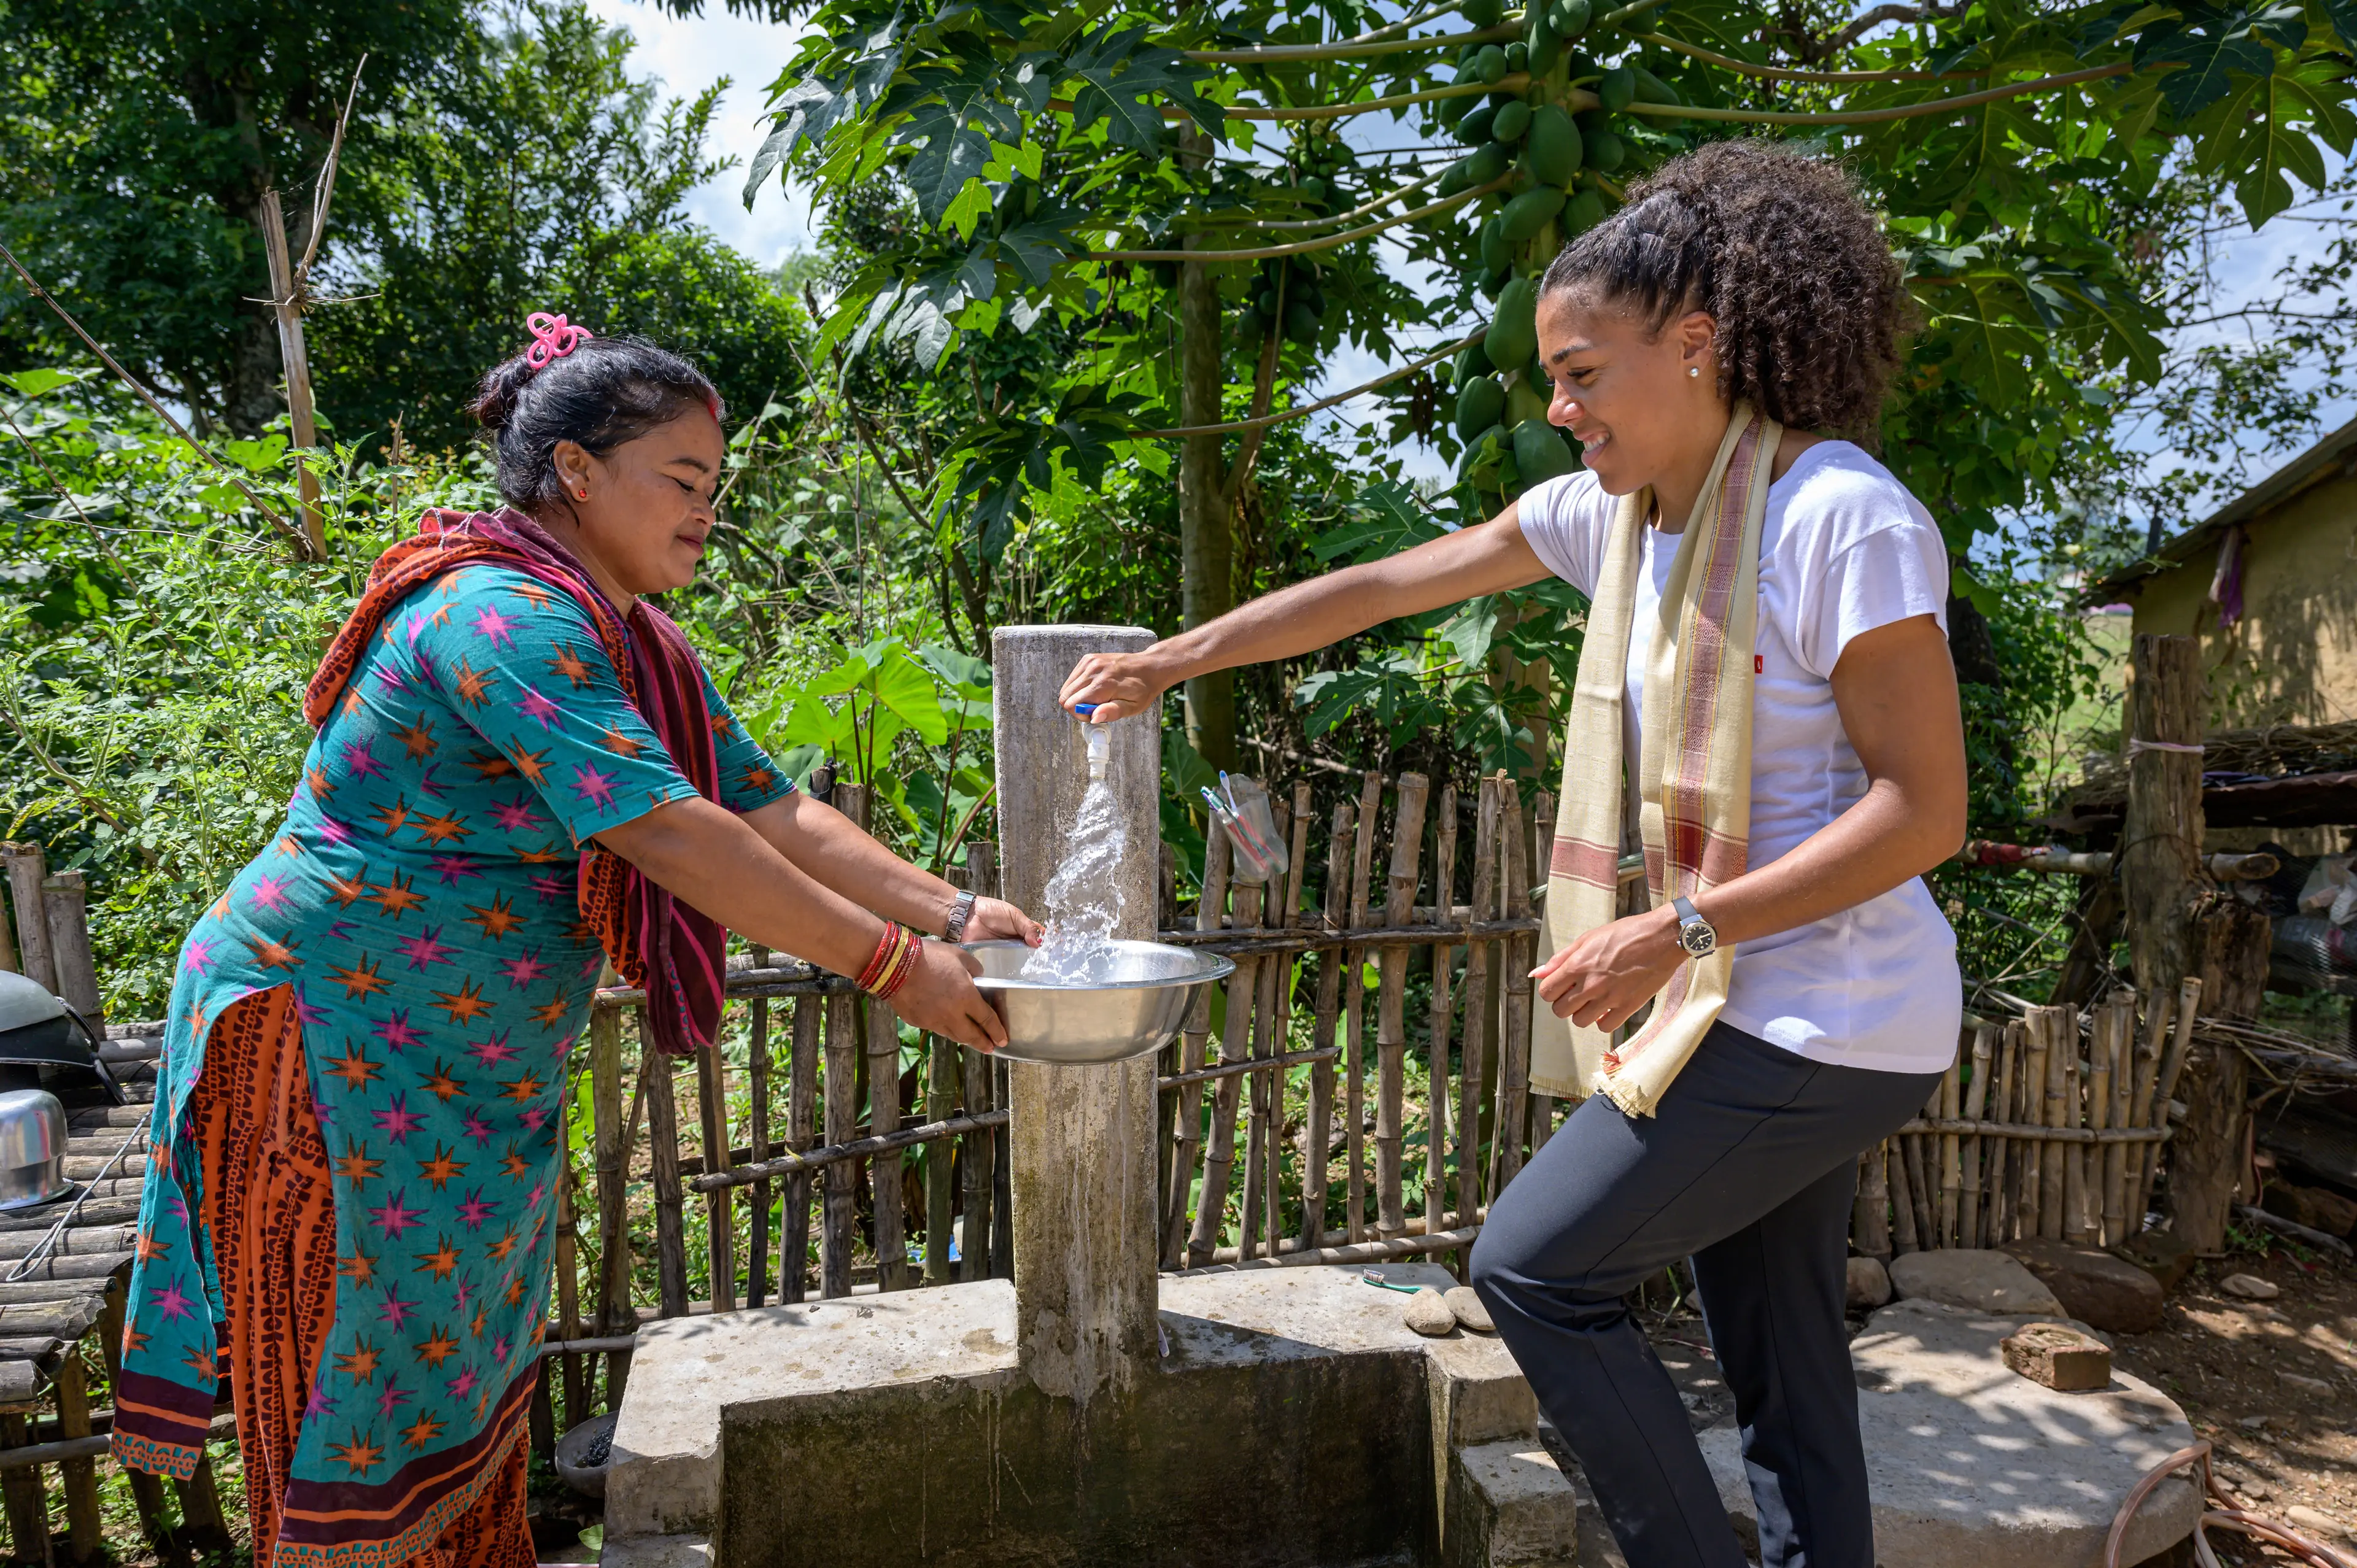 Une femme habillé de manière colorée et Mujinga Kambundji sont autour d'un robinet extérieur. Mujinga Kambundji a une main sur le robinet d'où coule de l'eau. En arrière-plan un jardin verdoyant.